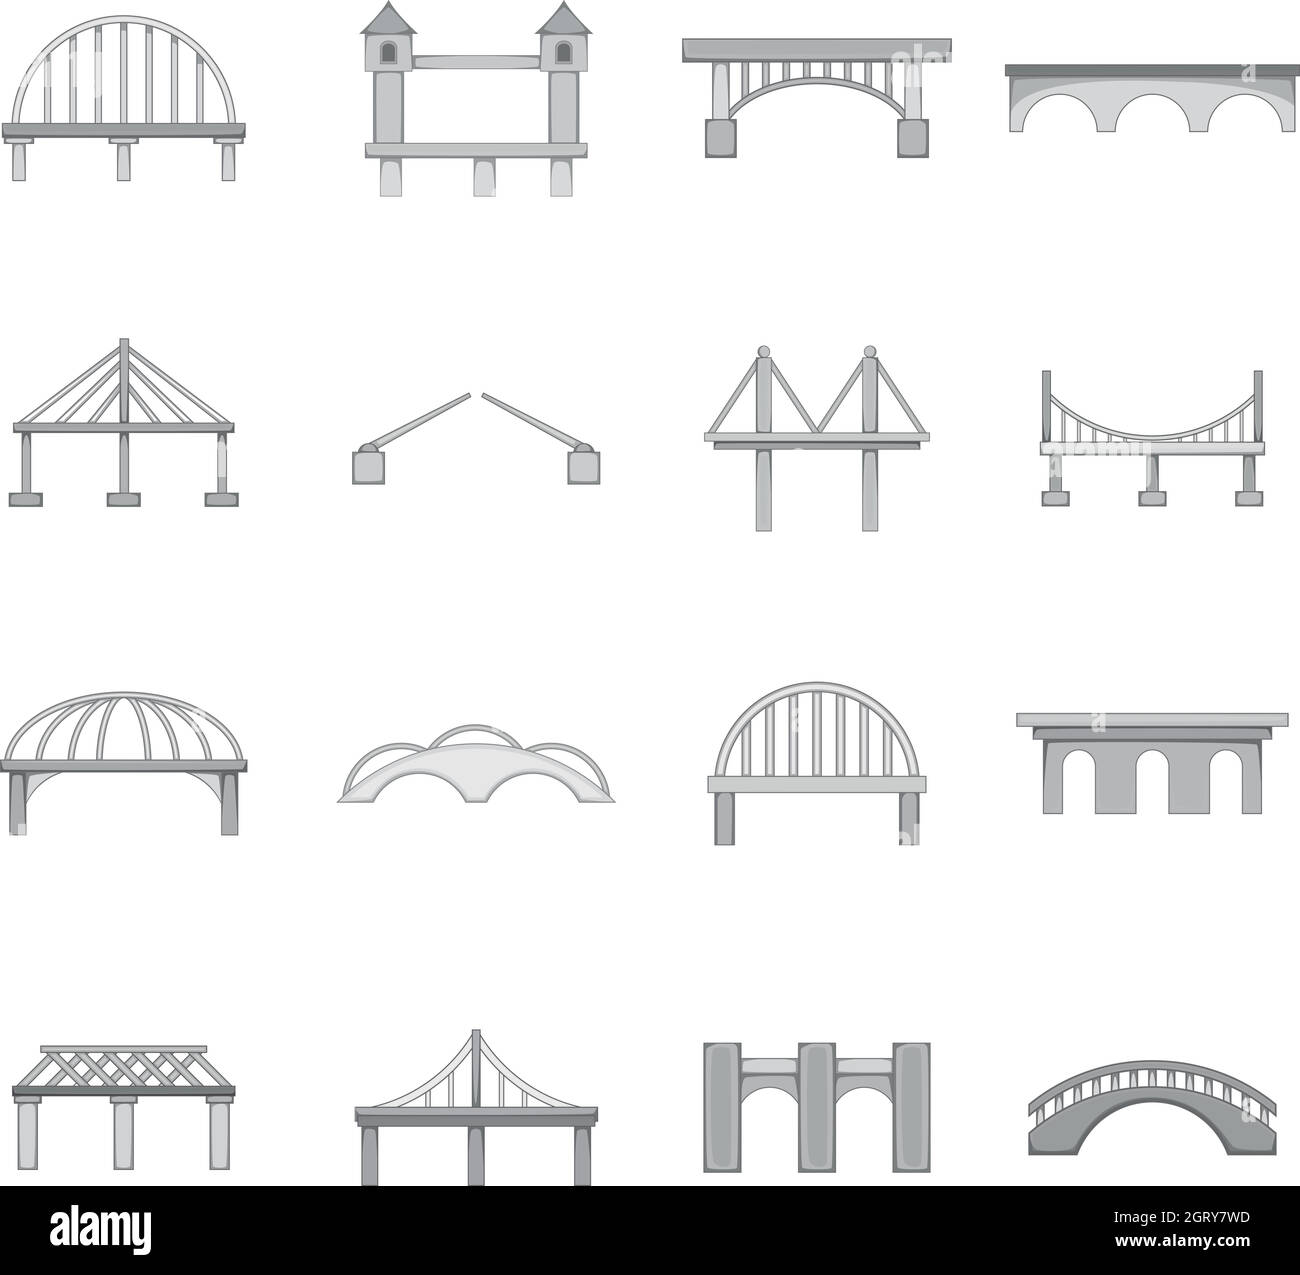 Icone costruzione ponte impostate, stile monocromatico Illustrazione Vettoriale